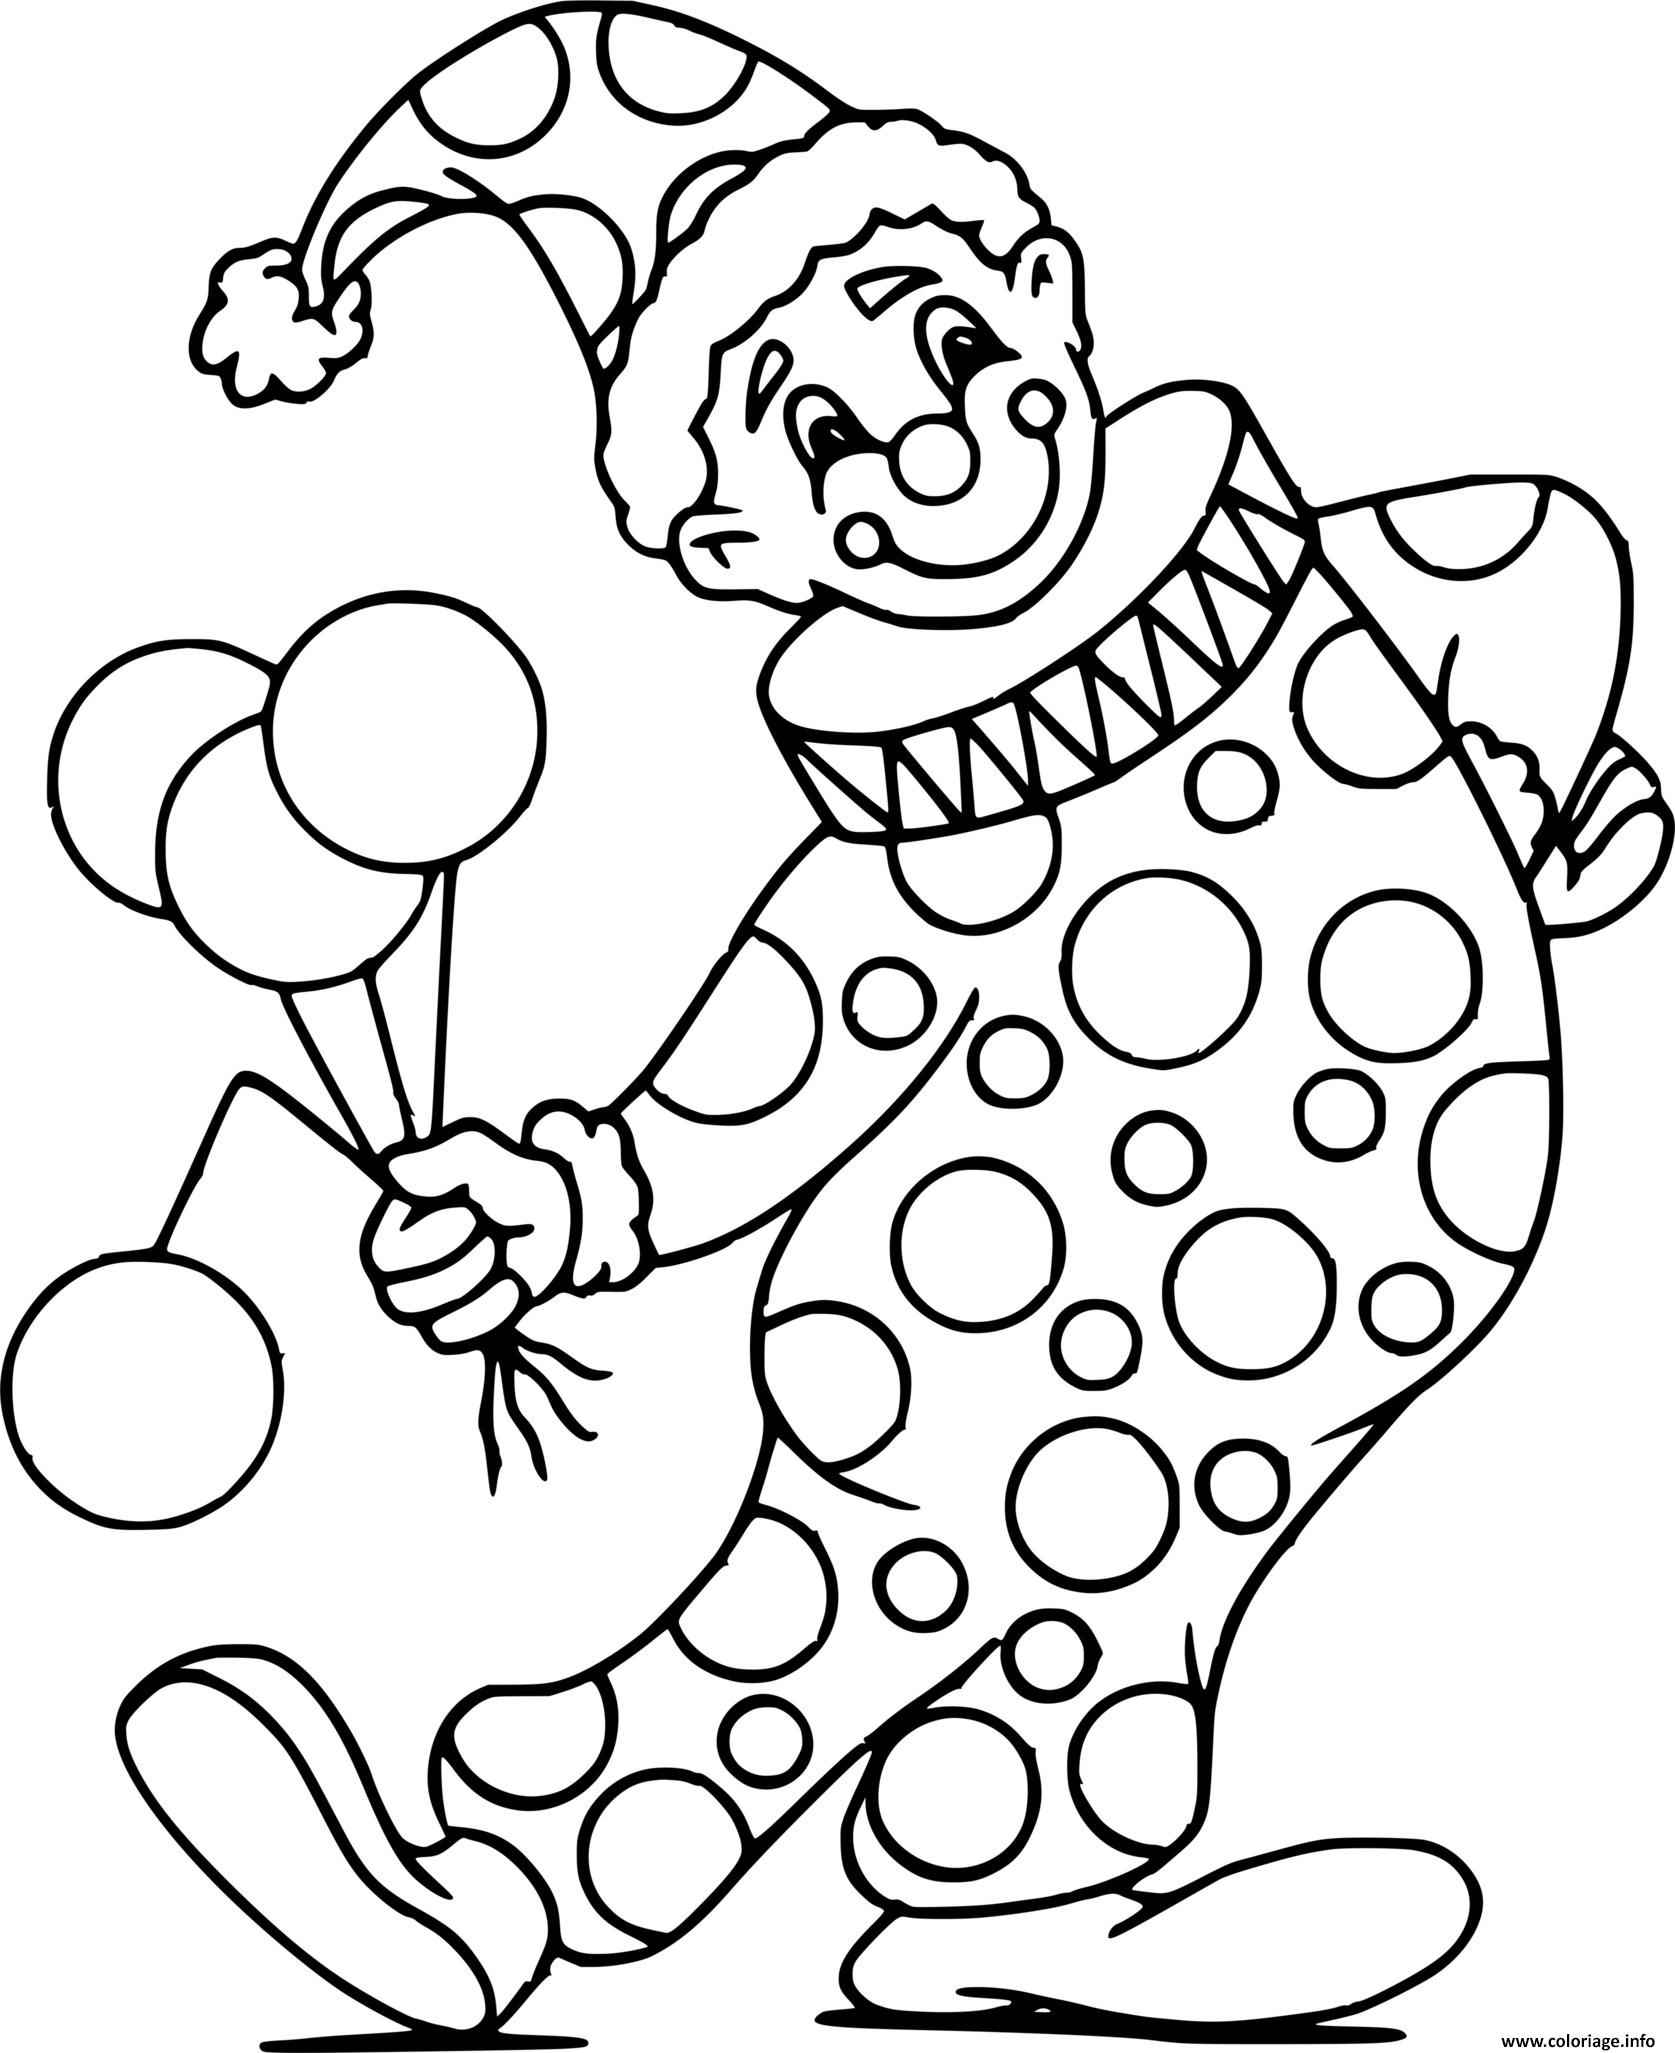 Coloriage Clown Avec Son Deguisement Et Des Ballons De Celebration Dessin à Imprimer